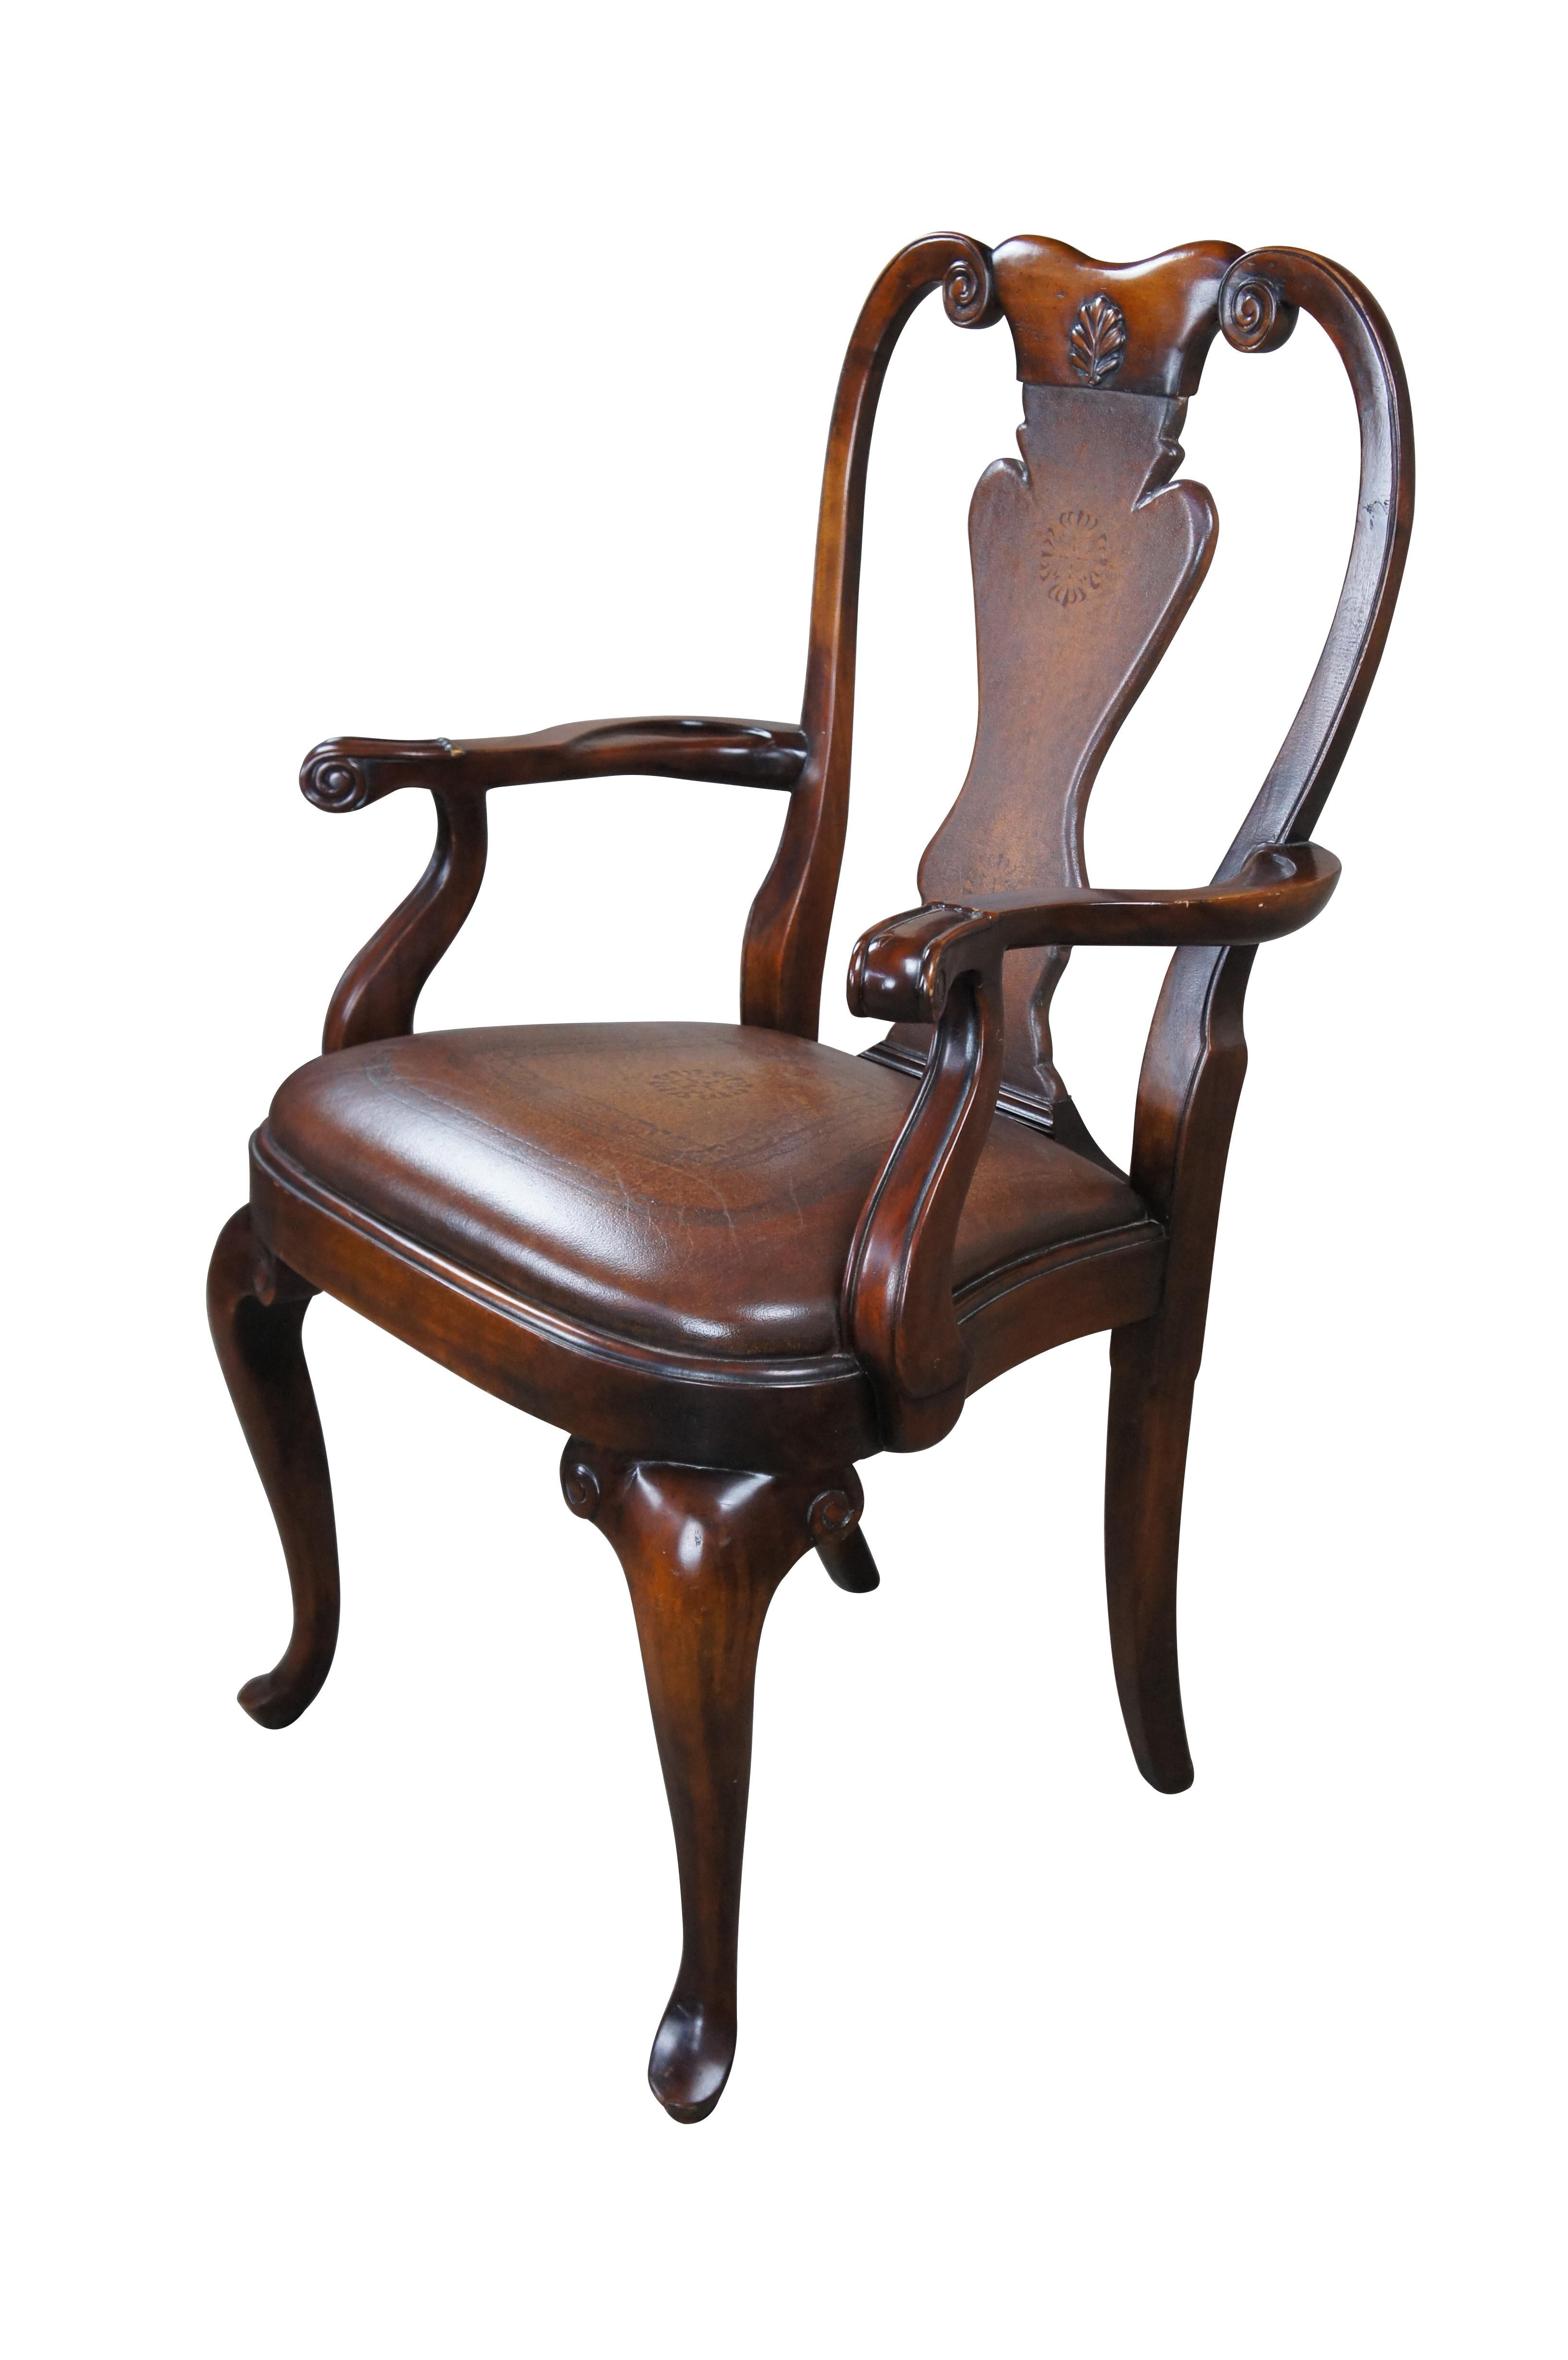 Ein stattlicher Sessel von Theodore Alexander. Nach dem Vorbild eines traditionellen Queen-Anne-Stuhls aus der georgianischen Zeit. Der Rahmen aus Mahagoniholz mit geschnitzter und verschnörkelter Kammleiste ist mit einer vasenförmigen Sitzfläche